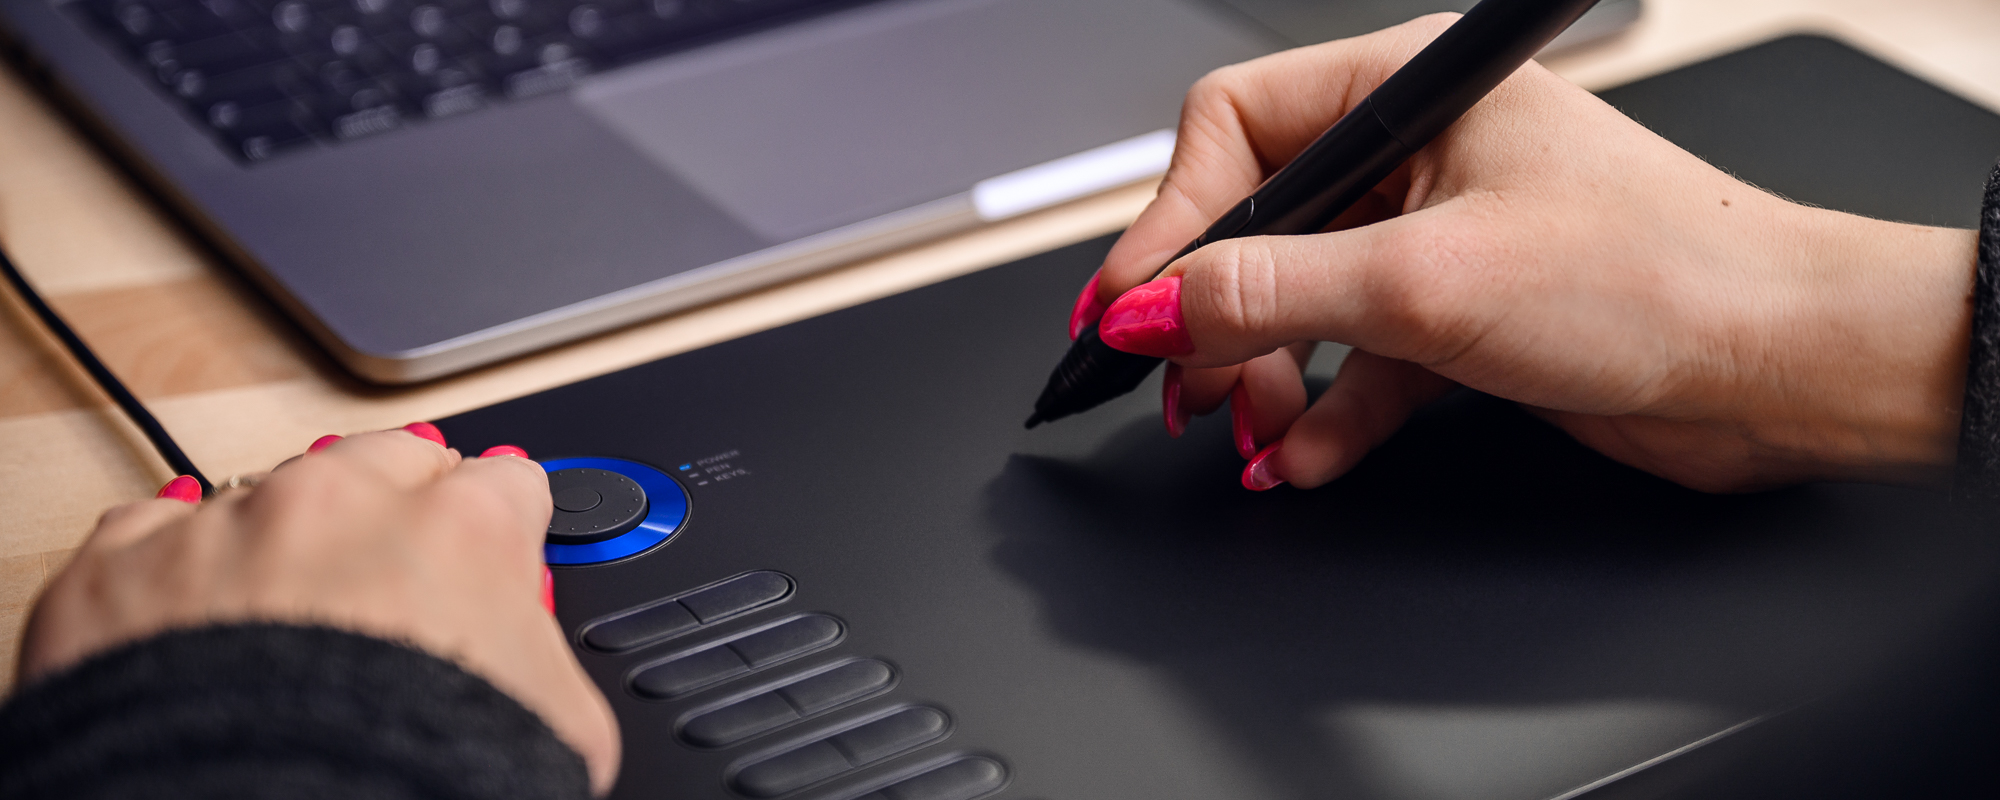 Photo - Tablette graphique Veikk A15 Pro sur un bureau brun clair, la main gauche d'une femme appuyant sur une touche de fonction, la main droite actionnant le stylo passif Veikk.